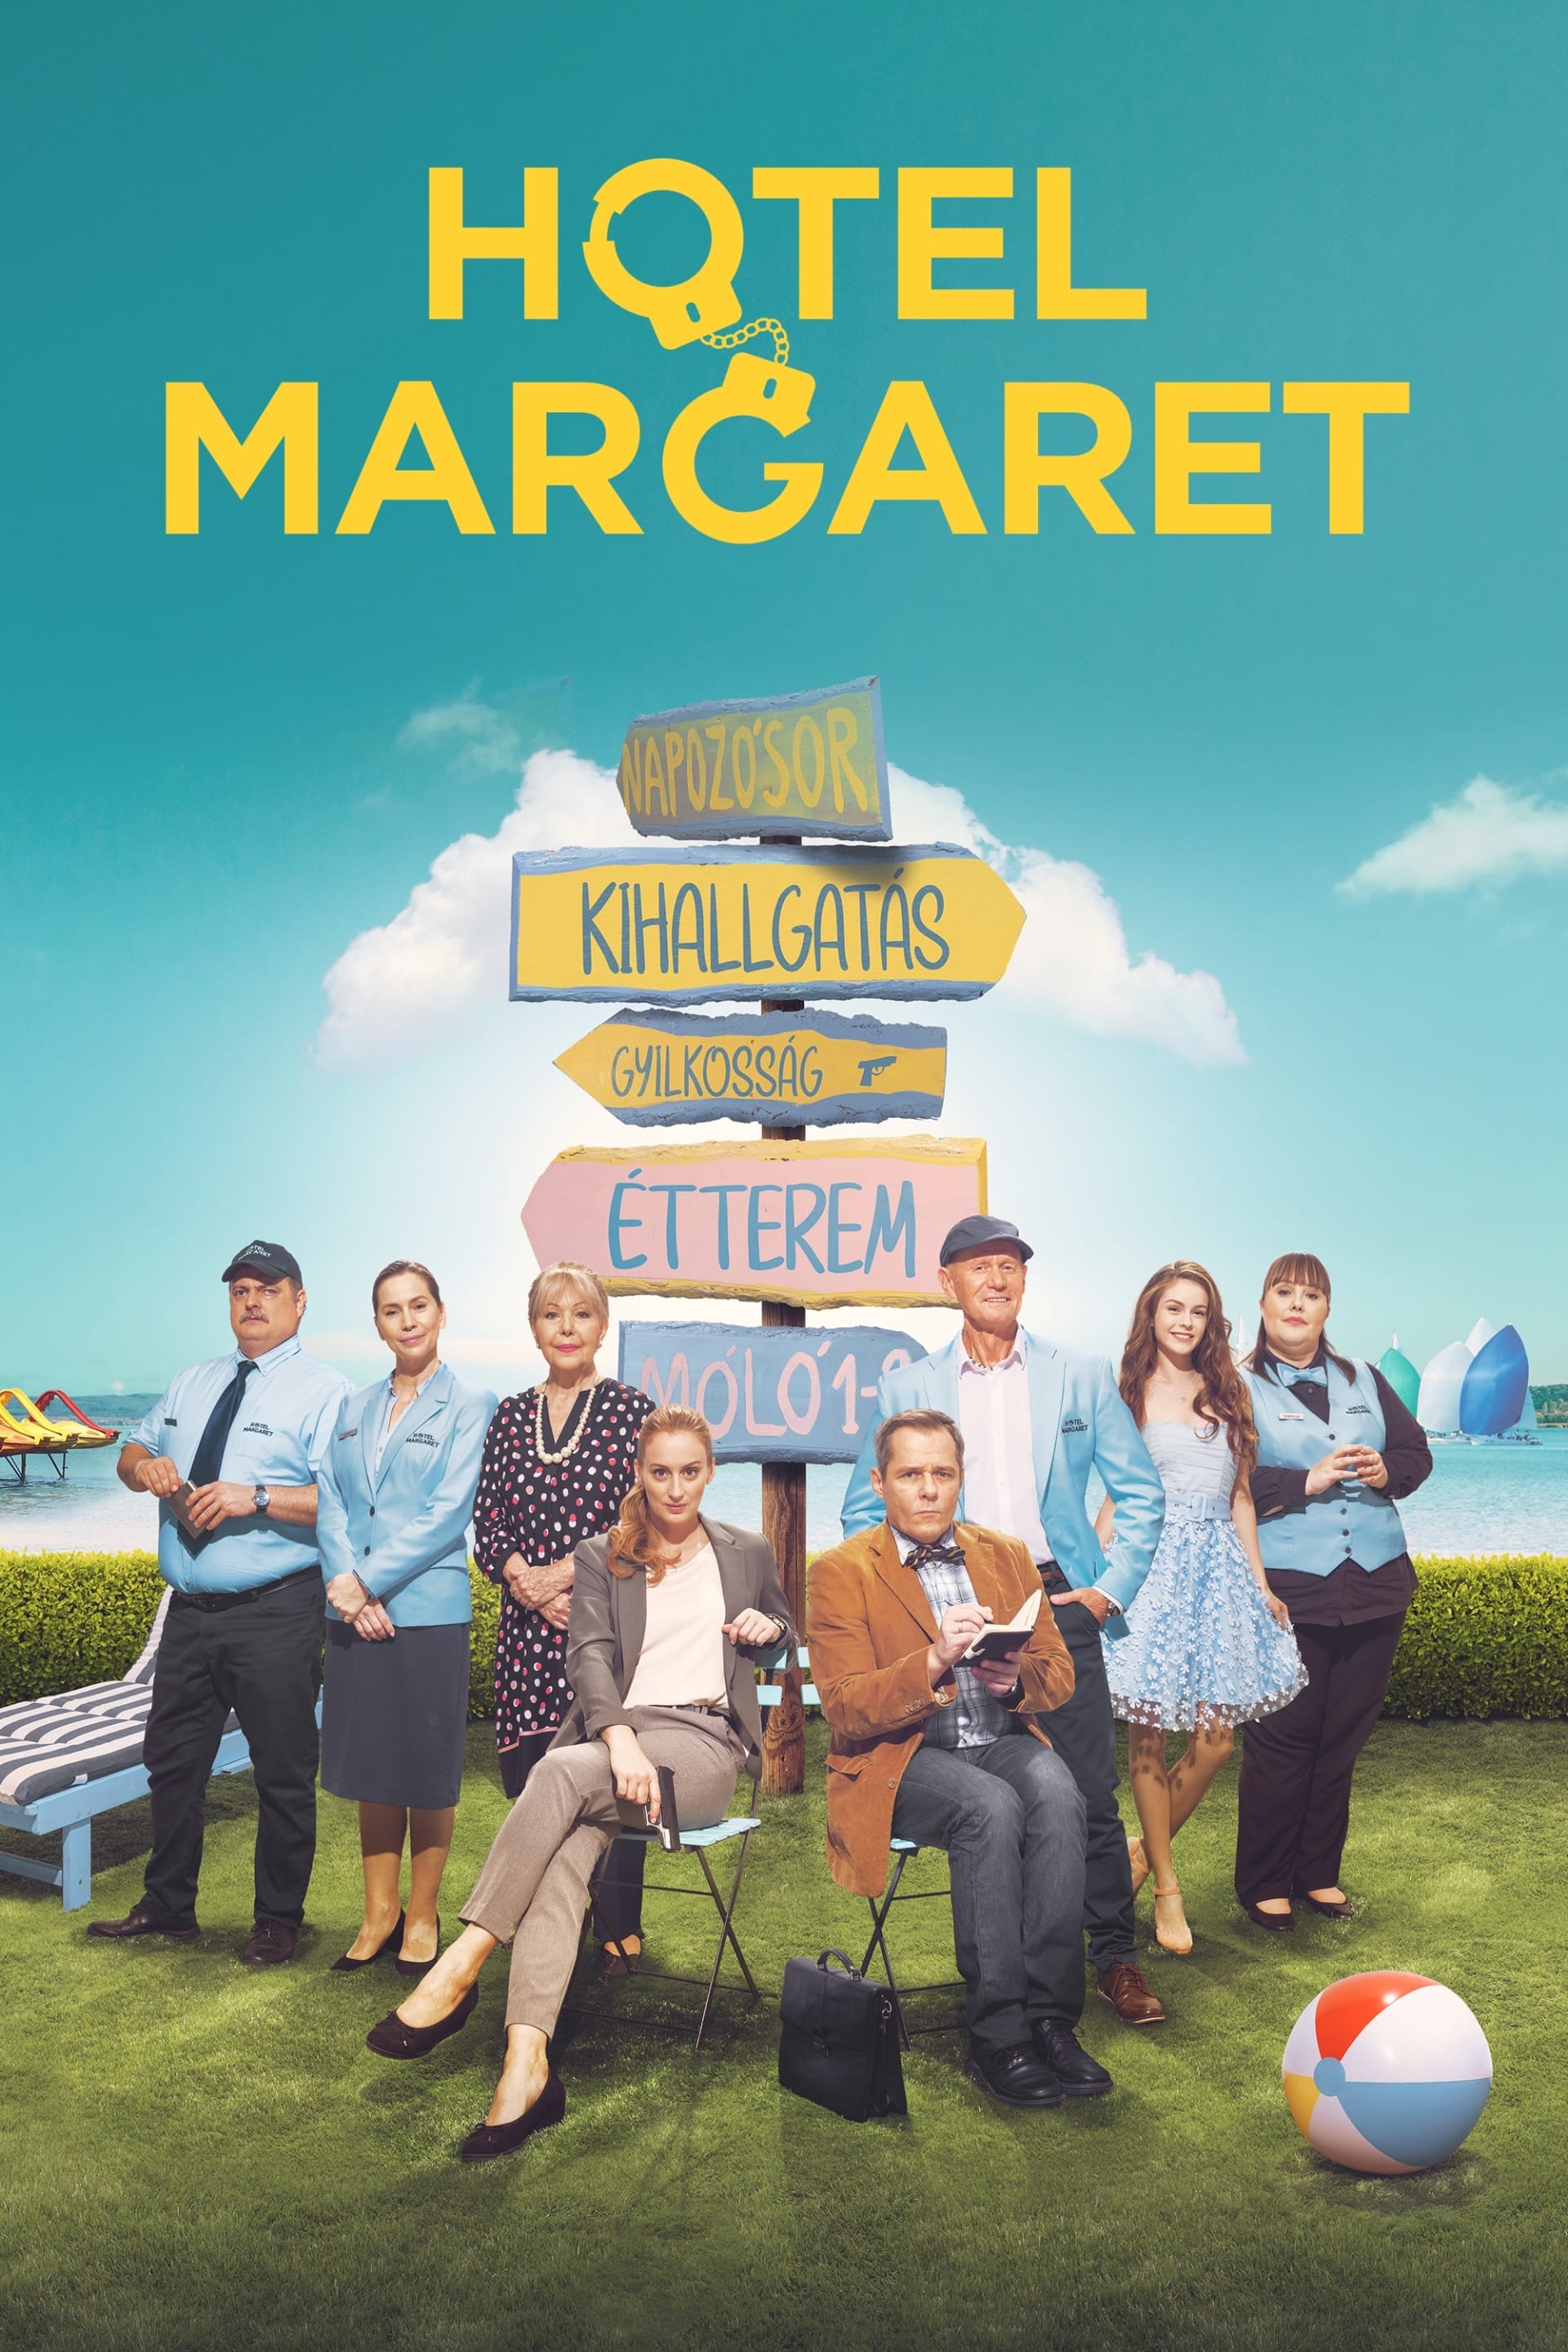 Hotel Margaret TV Shows About Criminal Investigation